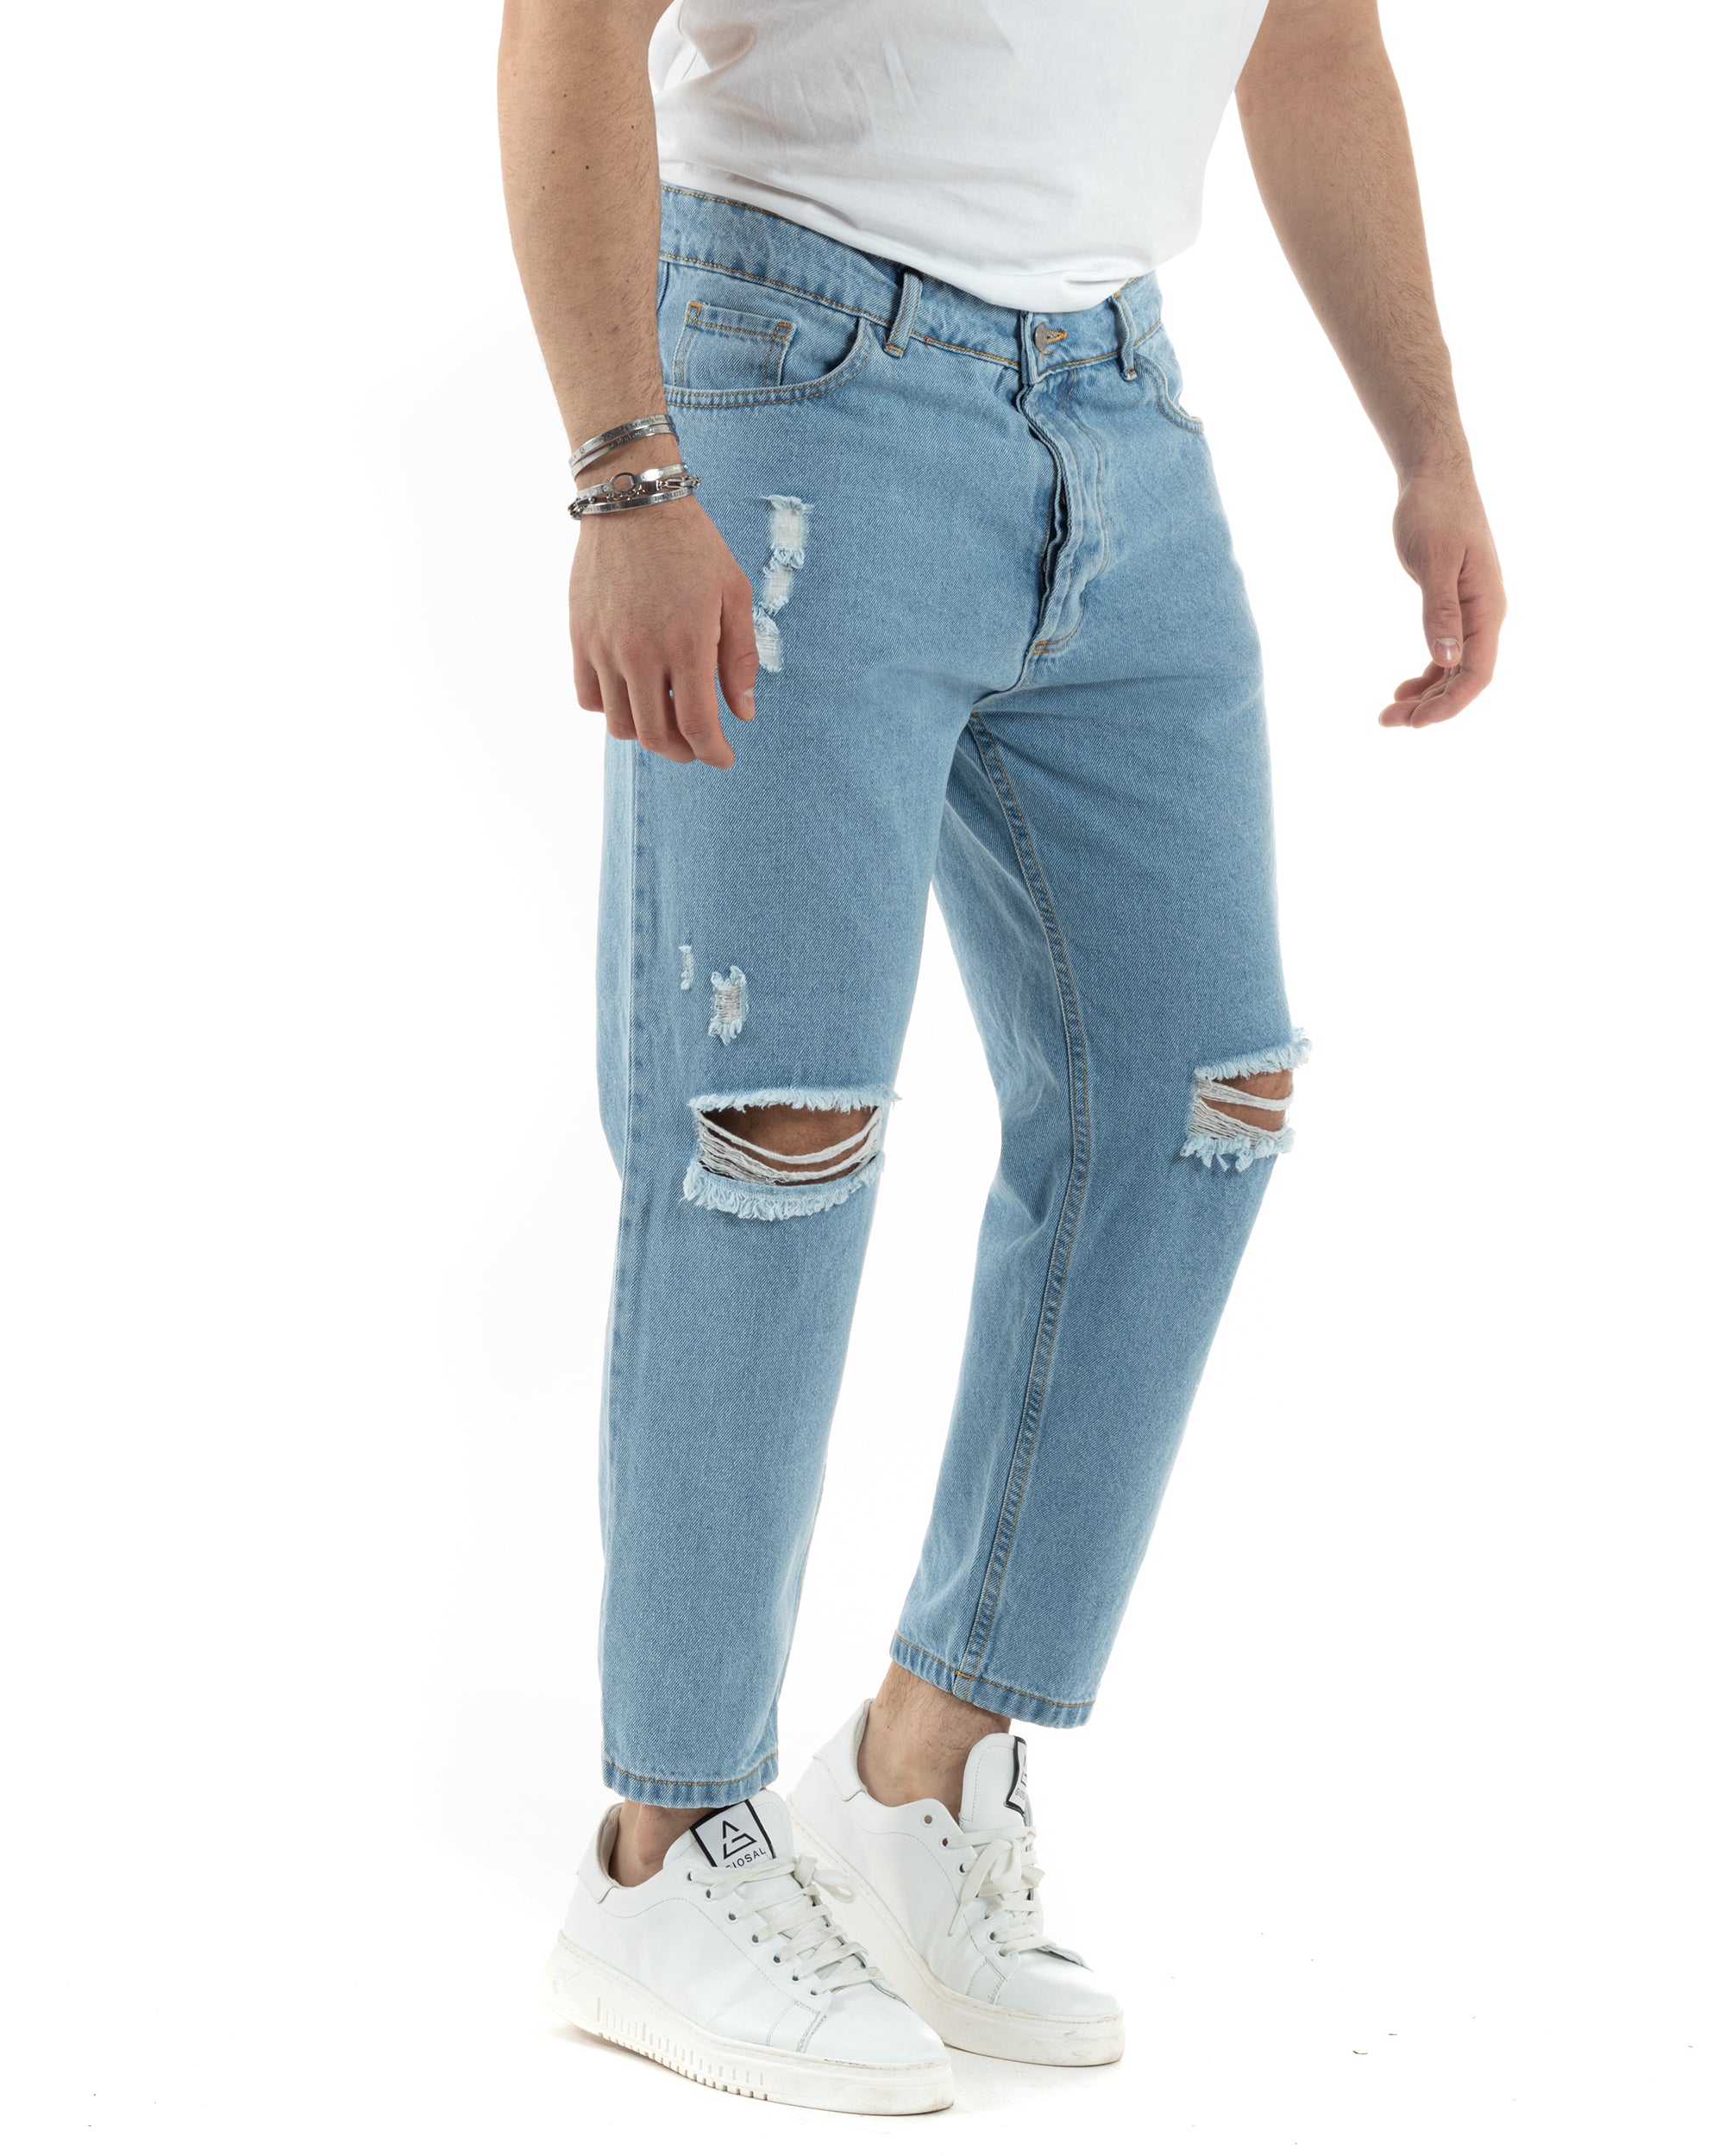 Pantaloni Jeans Uomo Straight Fit Denim Chiaro Con Strappi Cinque Tasche Casual GIOSAL-JS1012A